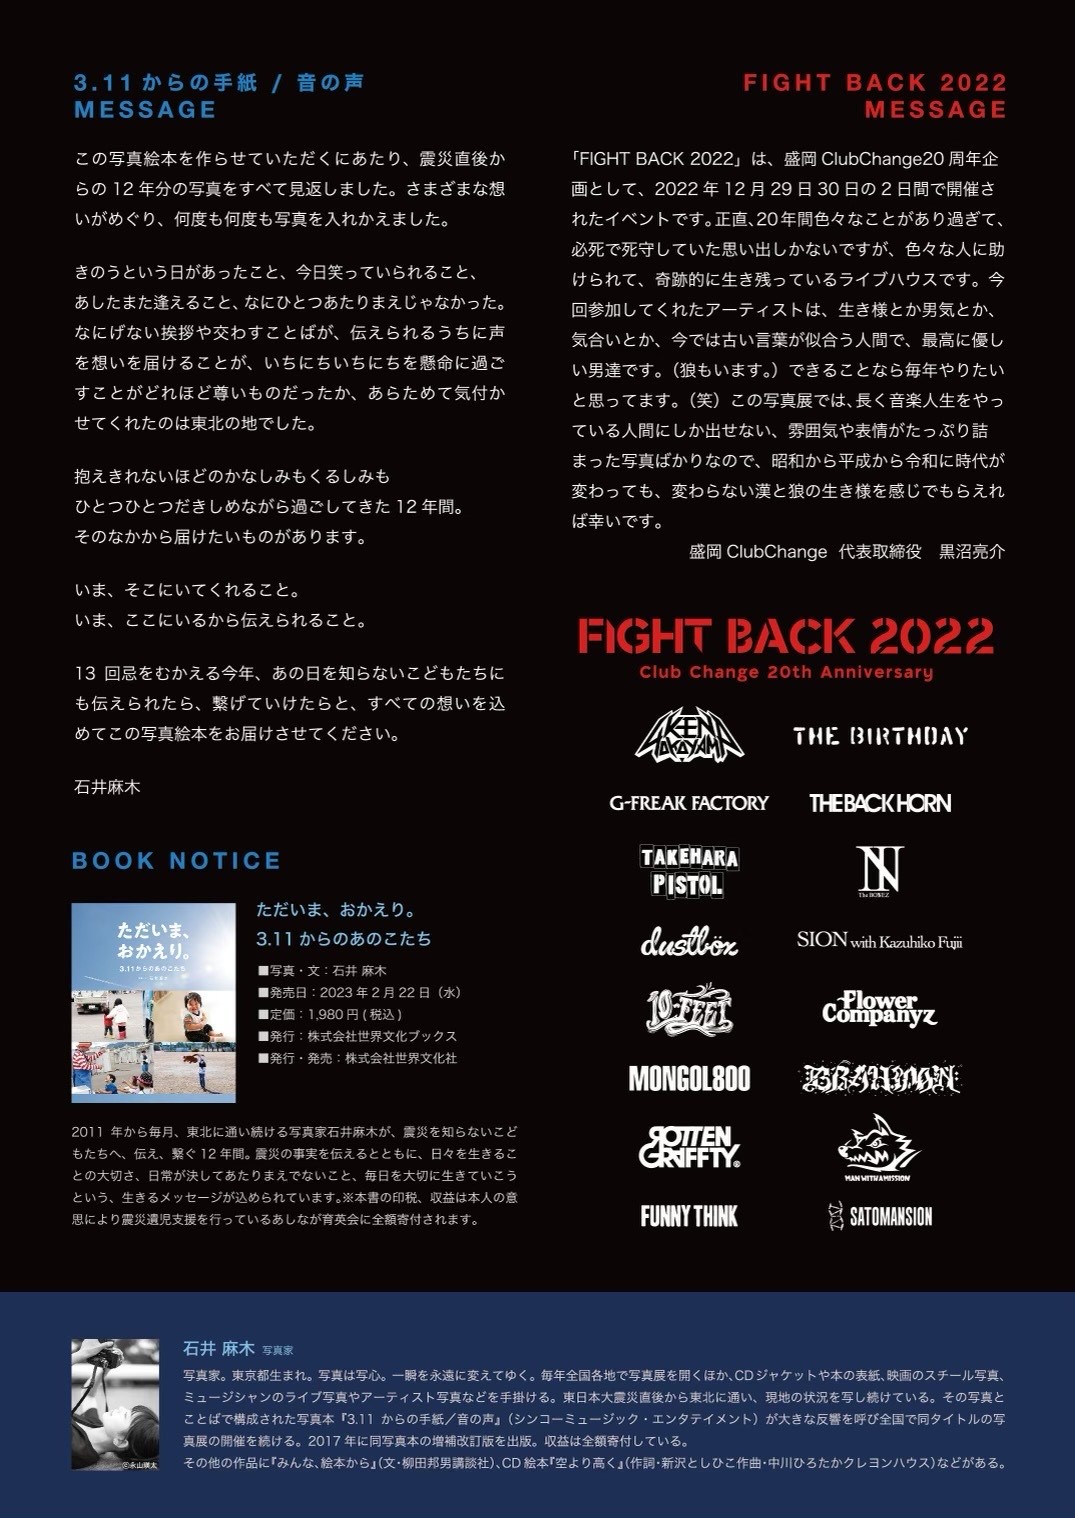 『石井麻木写真展【FIGHT BACK 2022】×【3.11からの手紙/音の声】』